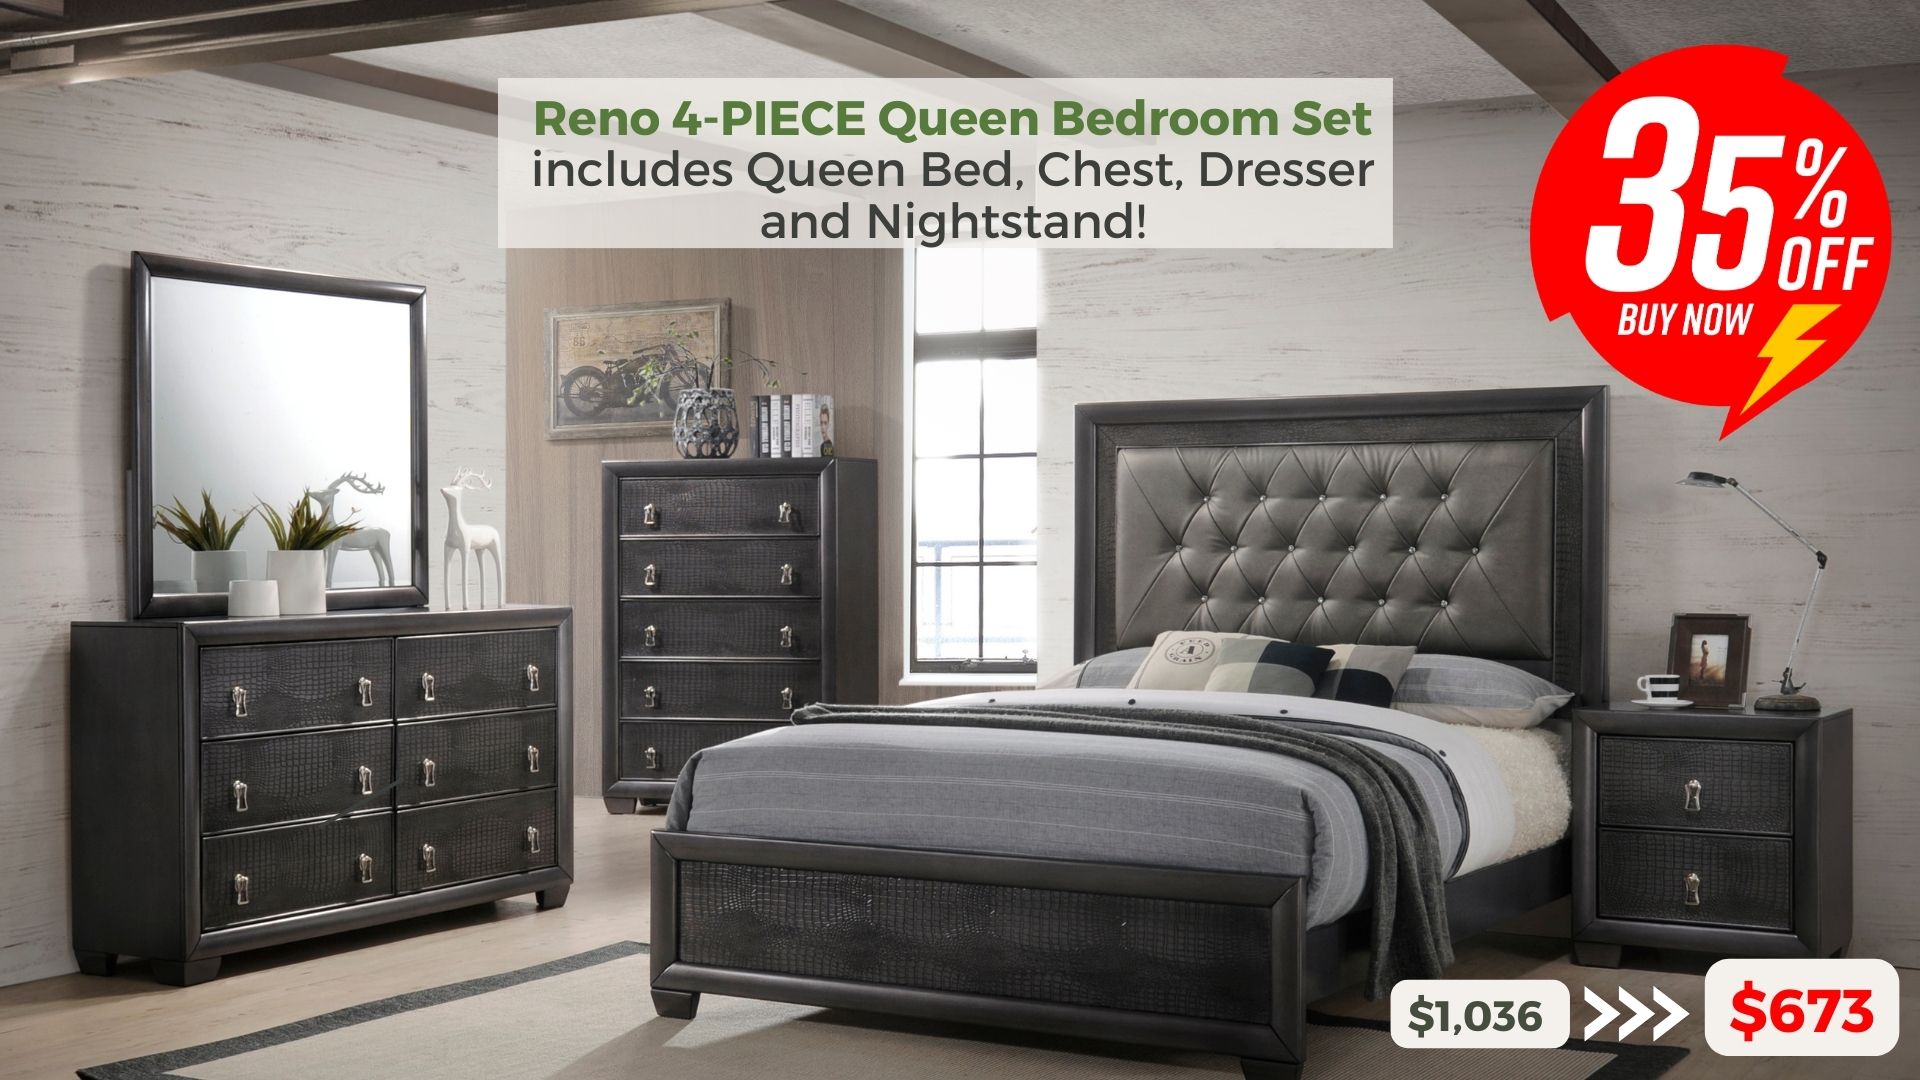 Reno 4-piece Queen Bedroom Set includes Queen Bed, Chest, Dresser and Nightstand. 35% off buy now $673